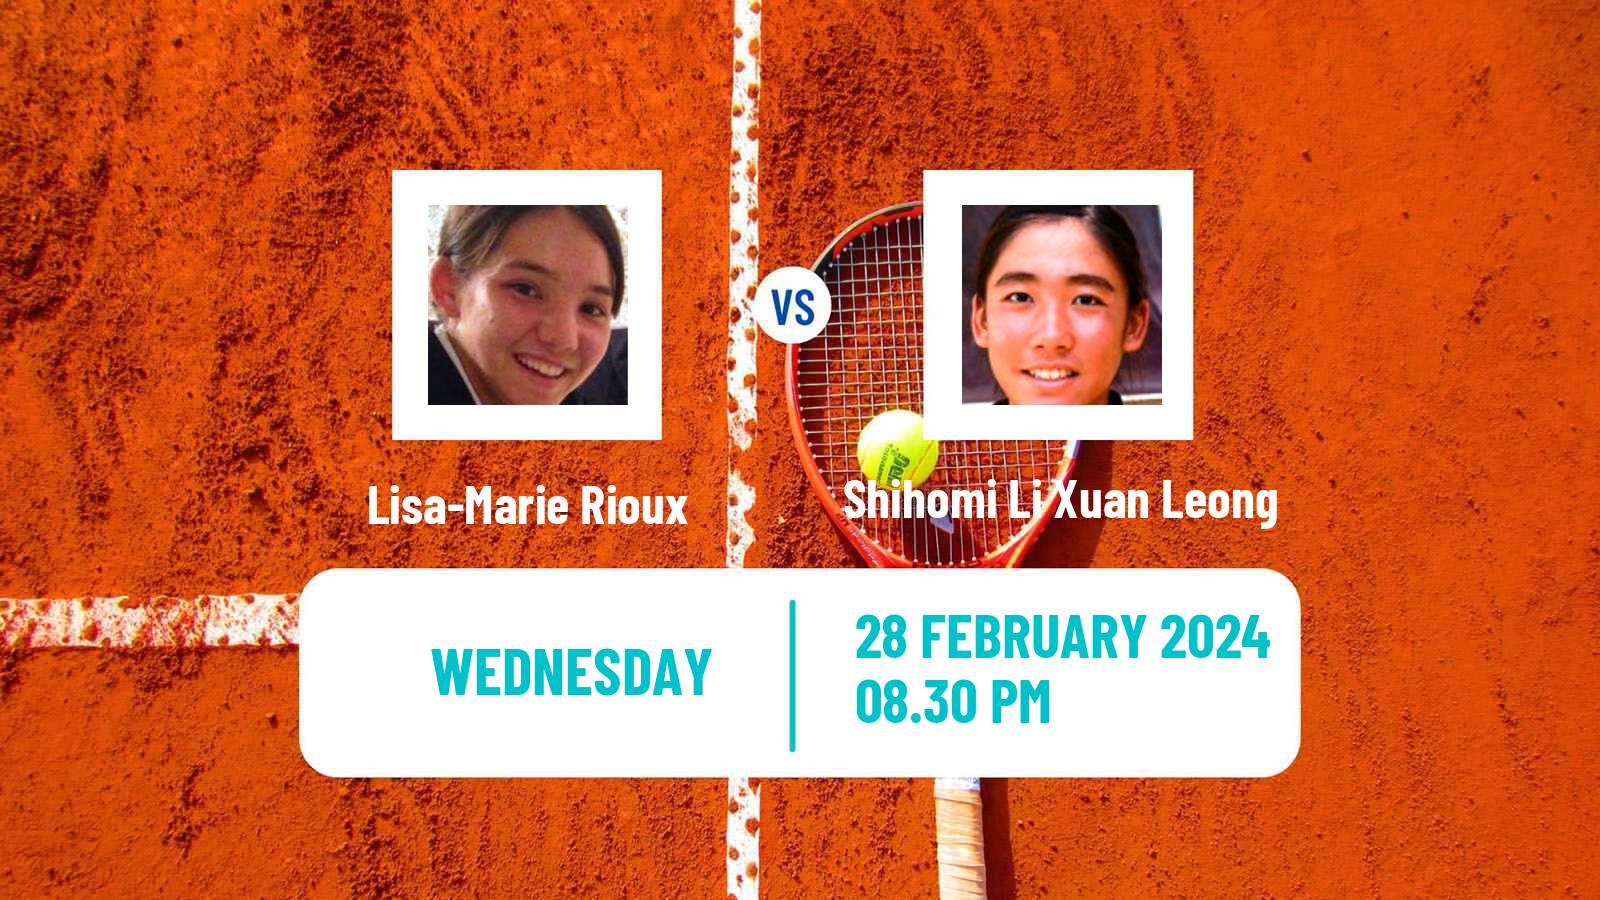 Tennis ITF W15 Ipoh Perak Women Lisa-Marie Rioux - Shihomi Li Xuan Leong